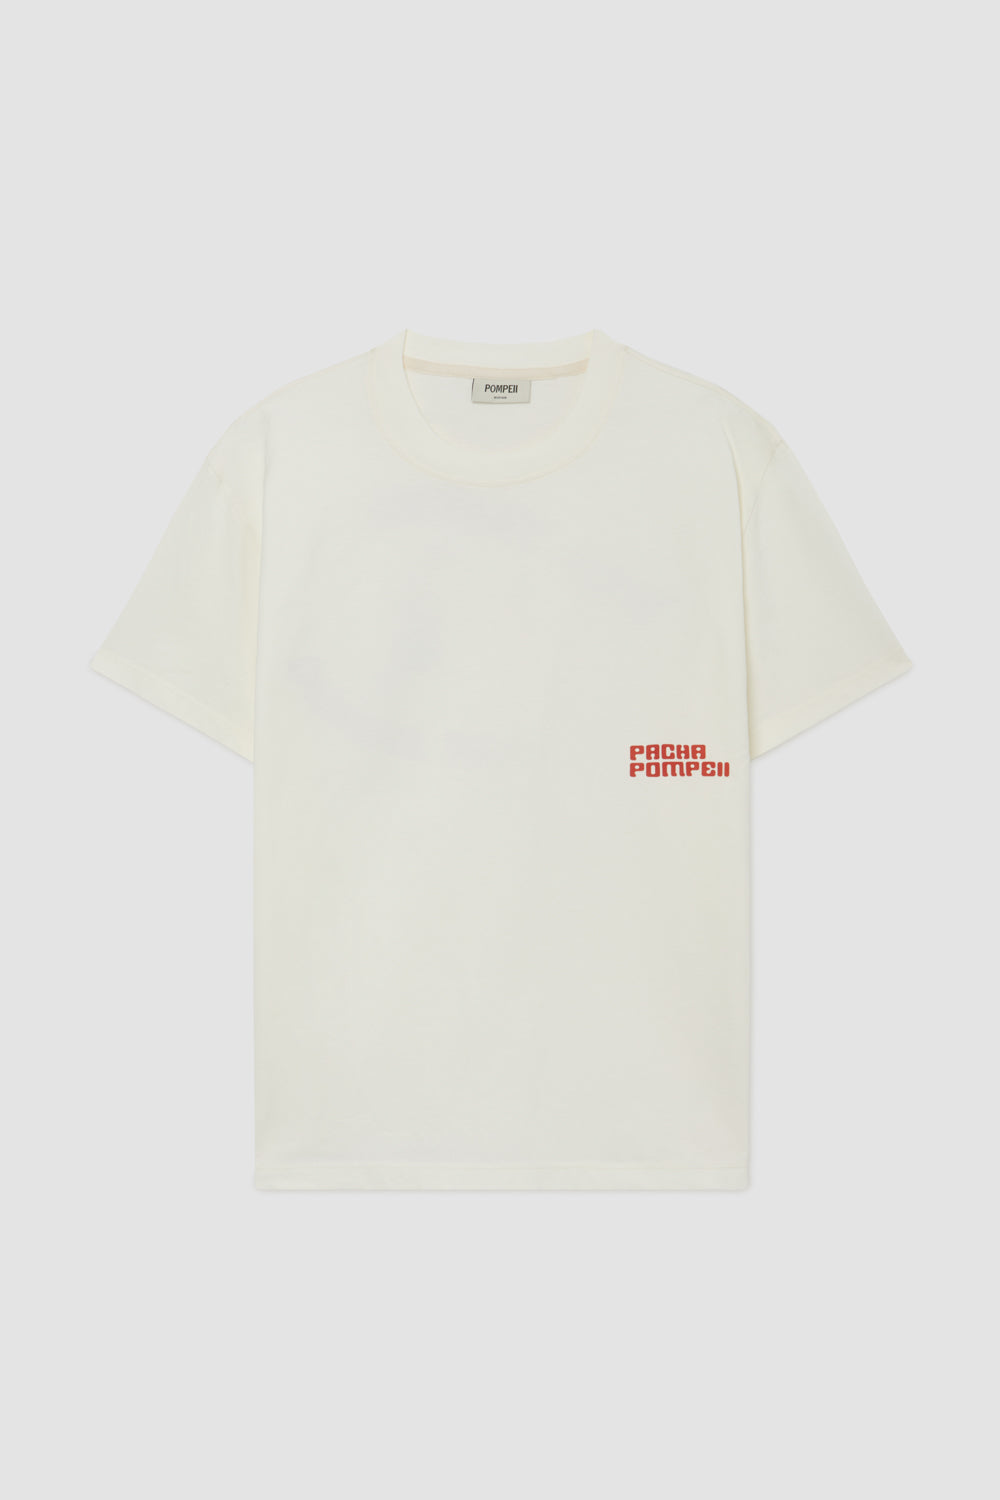 Pacha x Pompeii Camiseta Disco